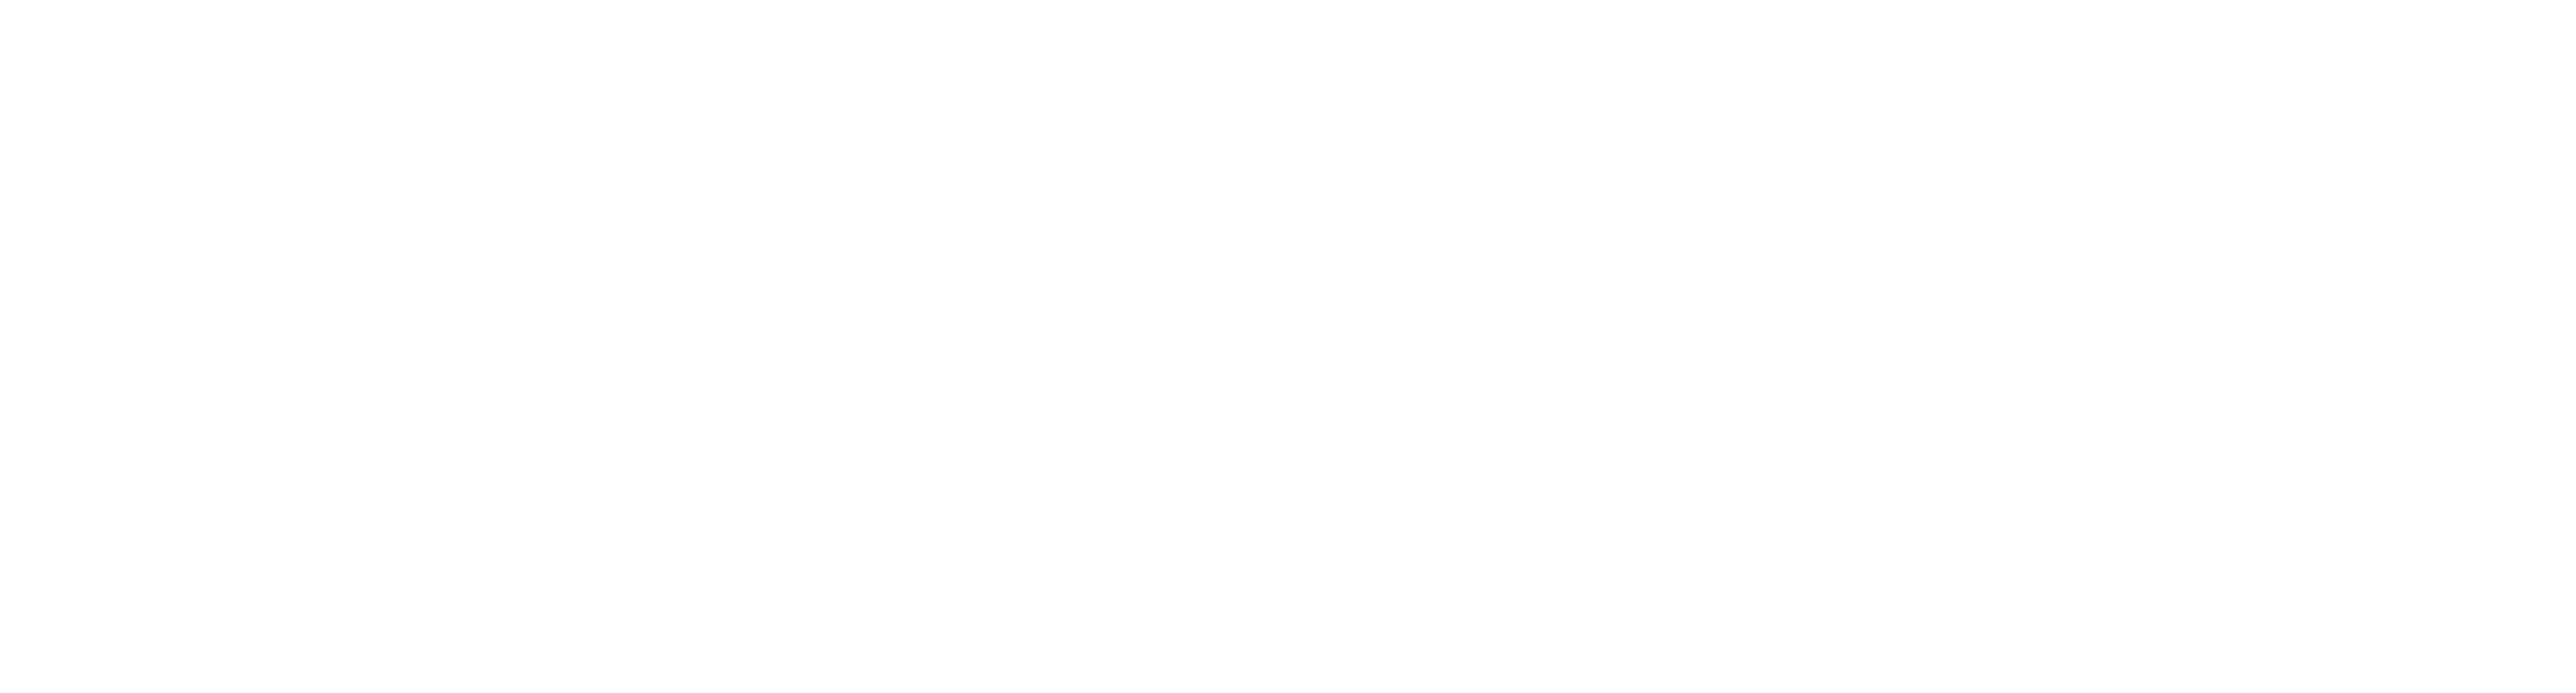 Oliver Schuster